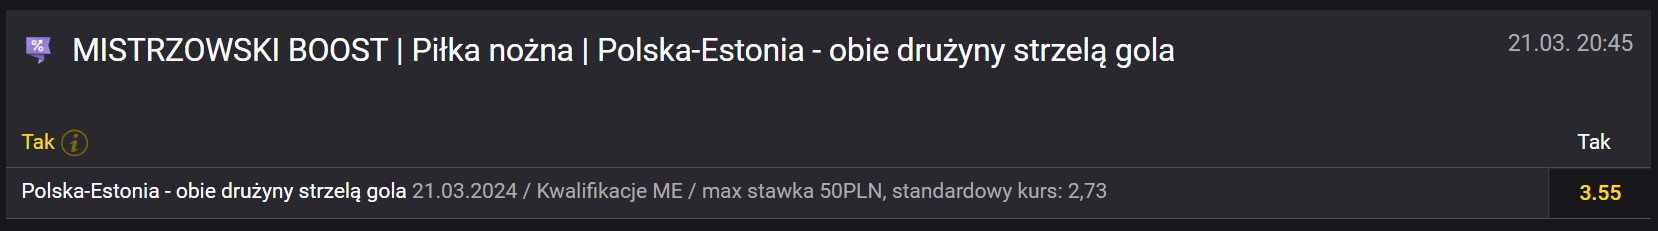 Fortuna mistrzowski boost na Polska - Estonia